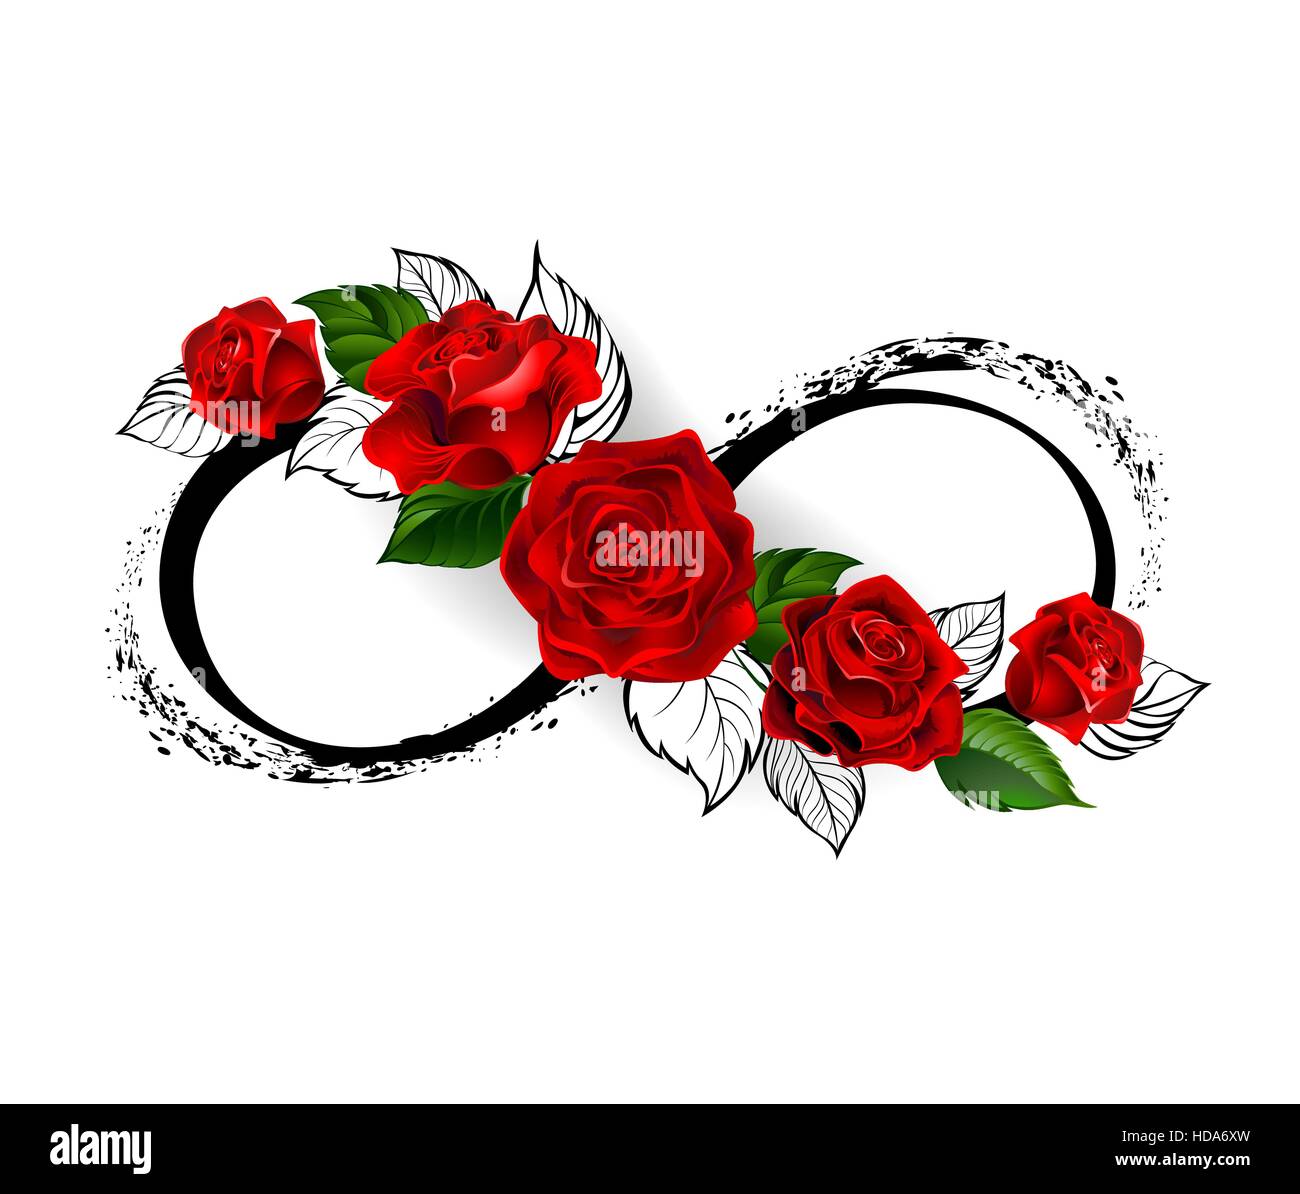 Unendlichkeitszeichen mit roten Rosen und schwarzen Stielen auf einem weißen Hintergrund. Design mit Rosen. Tattoo-Stil. Gotischen Stil.  Stammes-Grafiken. Stil-Skizze. Stock Vektor